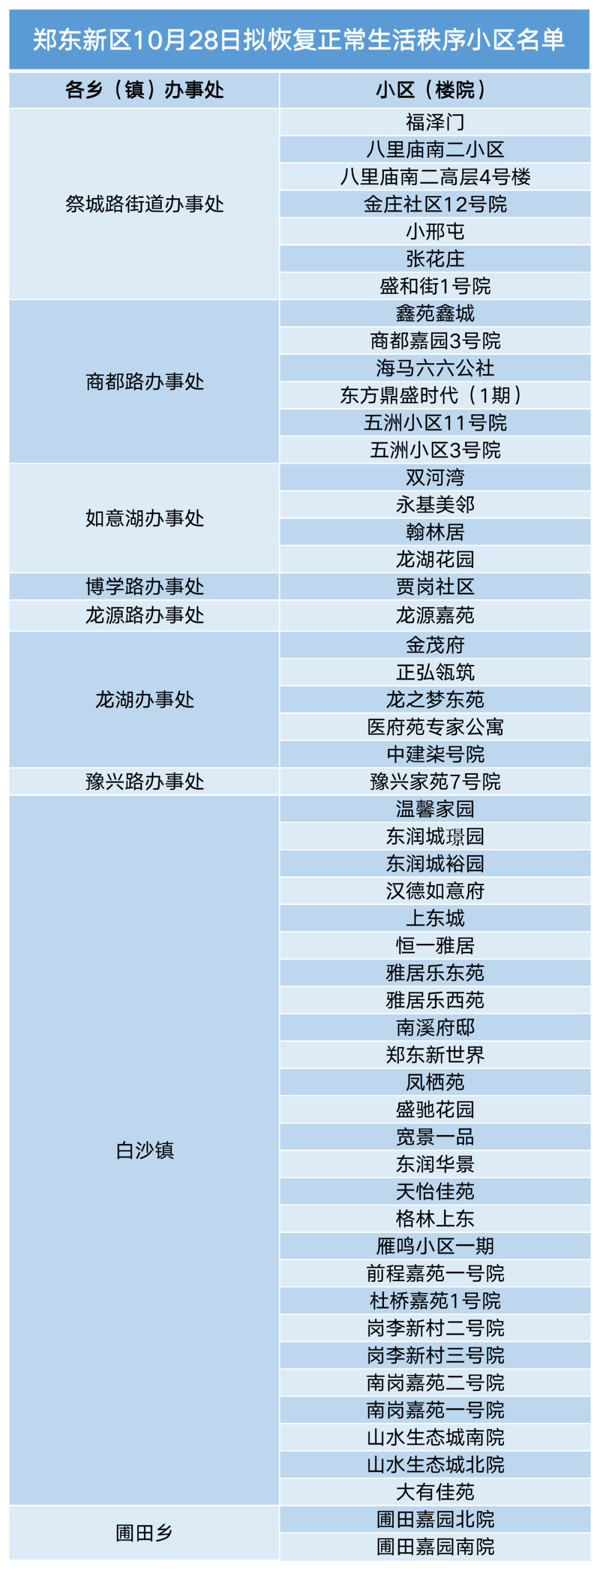 郑东新区发布10月28日​拟恢复正常生活居民小区名单